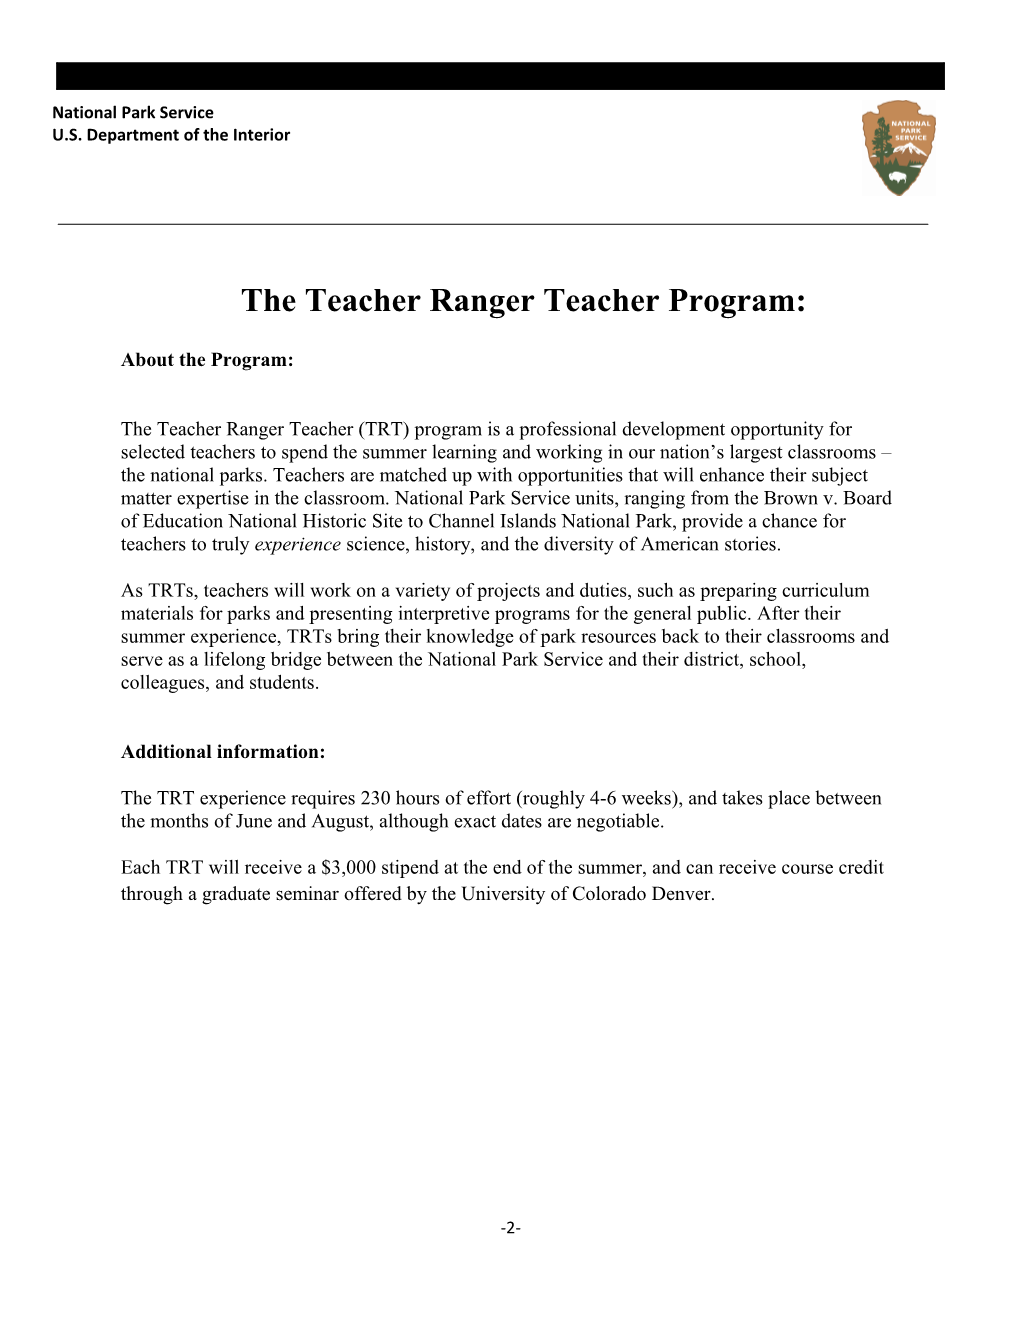 The Teacherranger Teacher Program